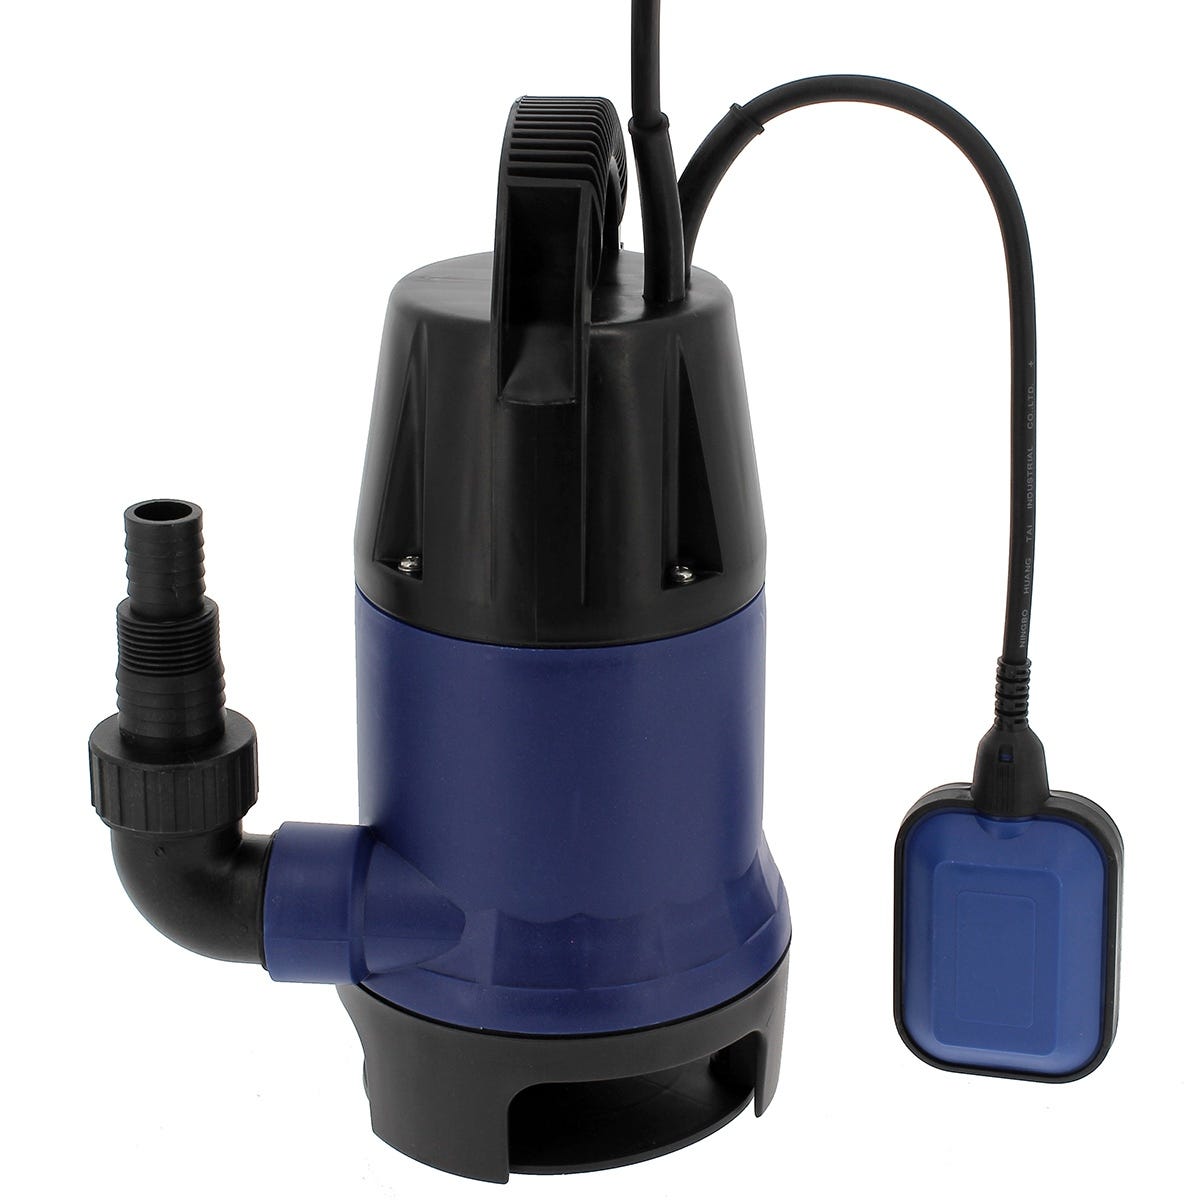 Beiser environnement - Pompe immergée inox 1,5 KW 220 V avec flotteur 2  kit - Contact au 0825 825 488